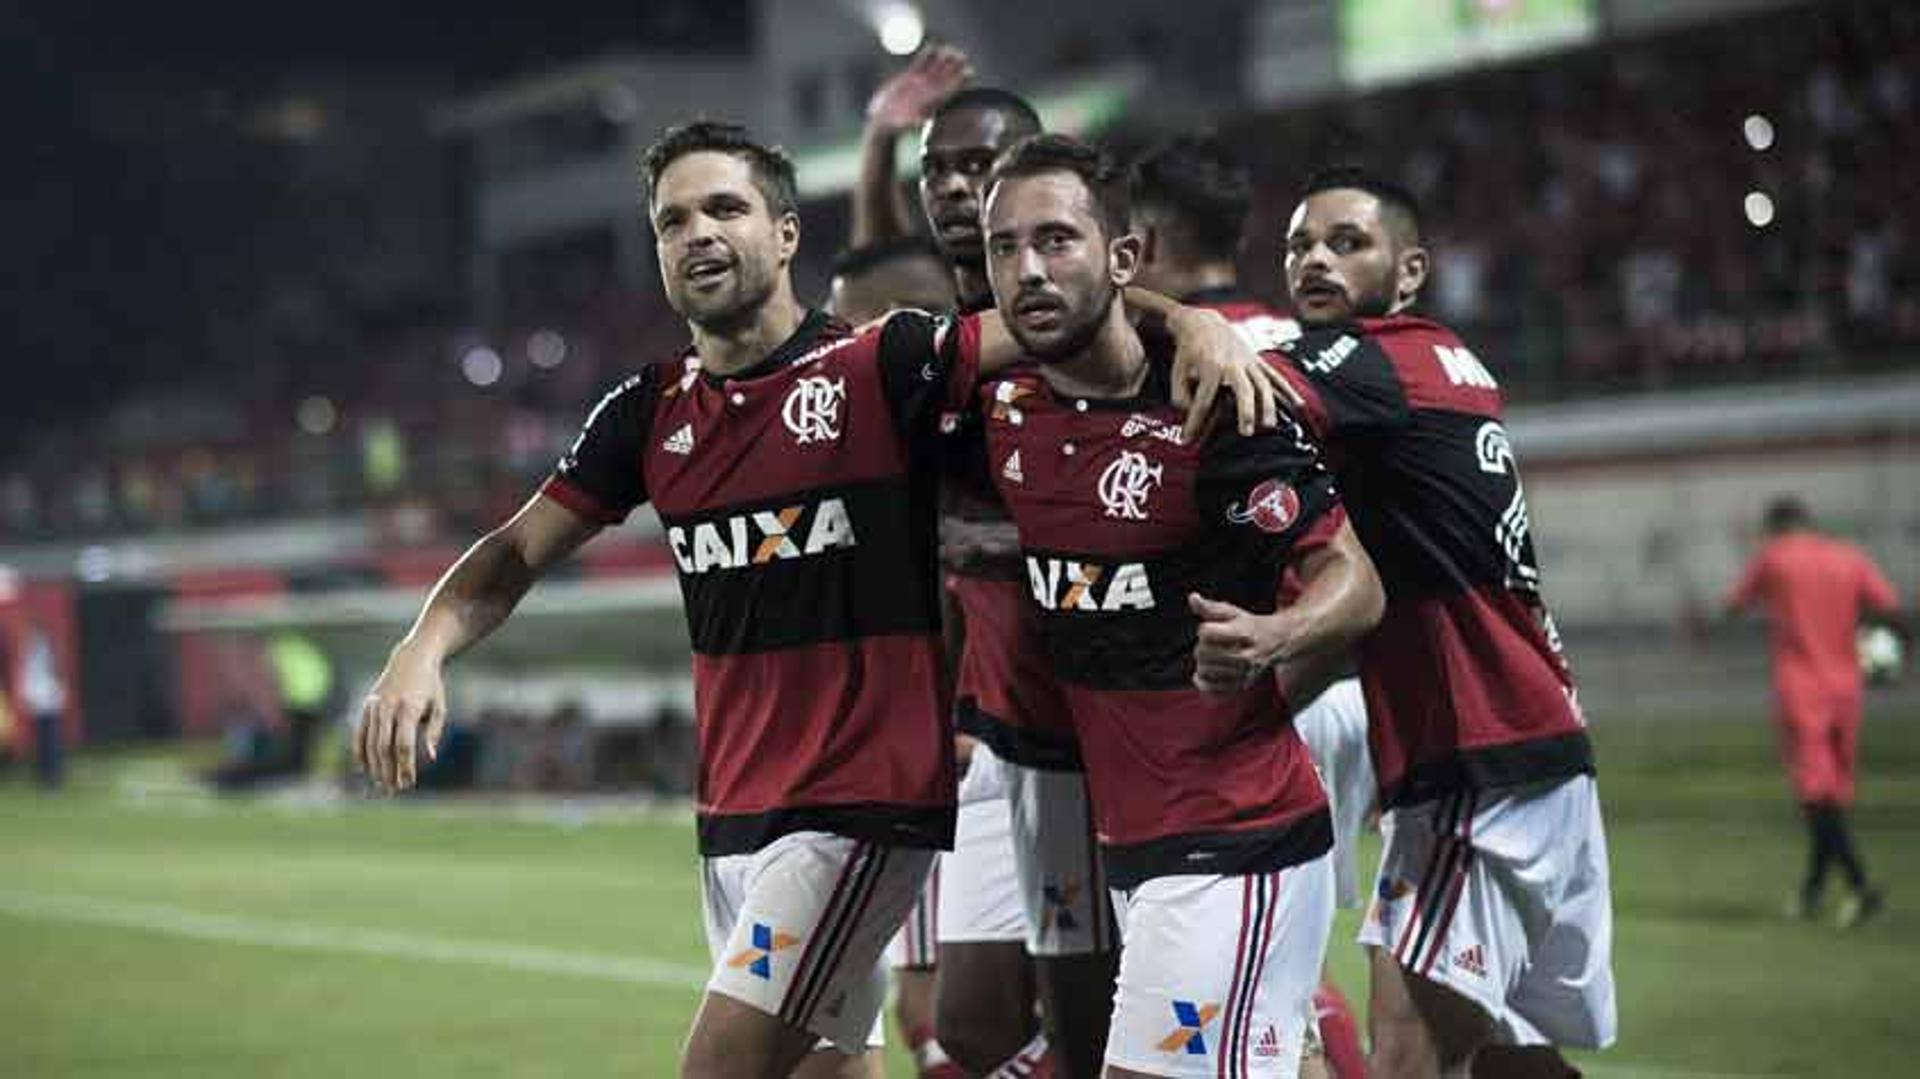 Flamengo goleou o Bahia por 4 a 1, em vitória construída no final da partida. Veja a seguir uma galeria de imagens da partida